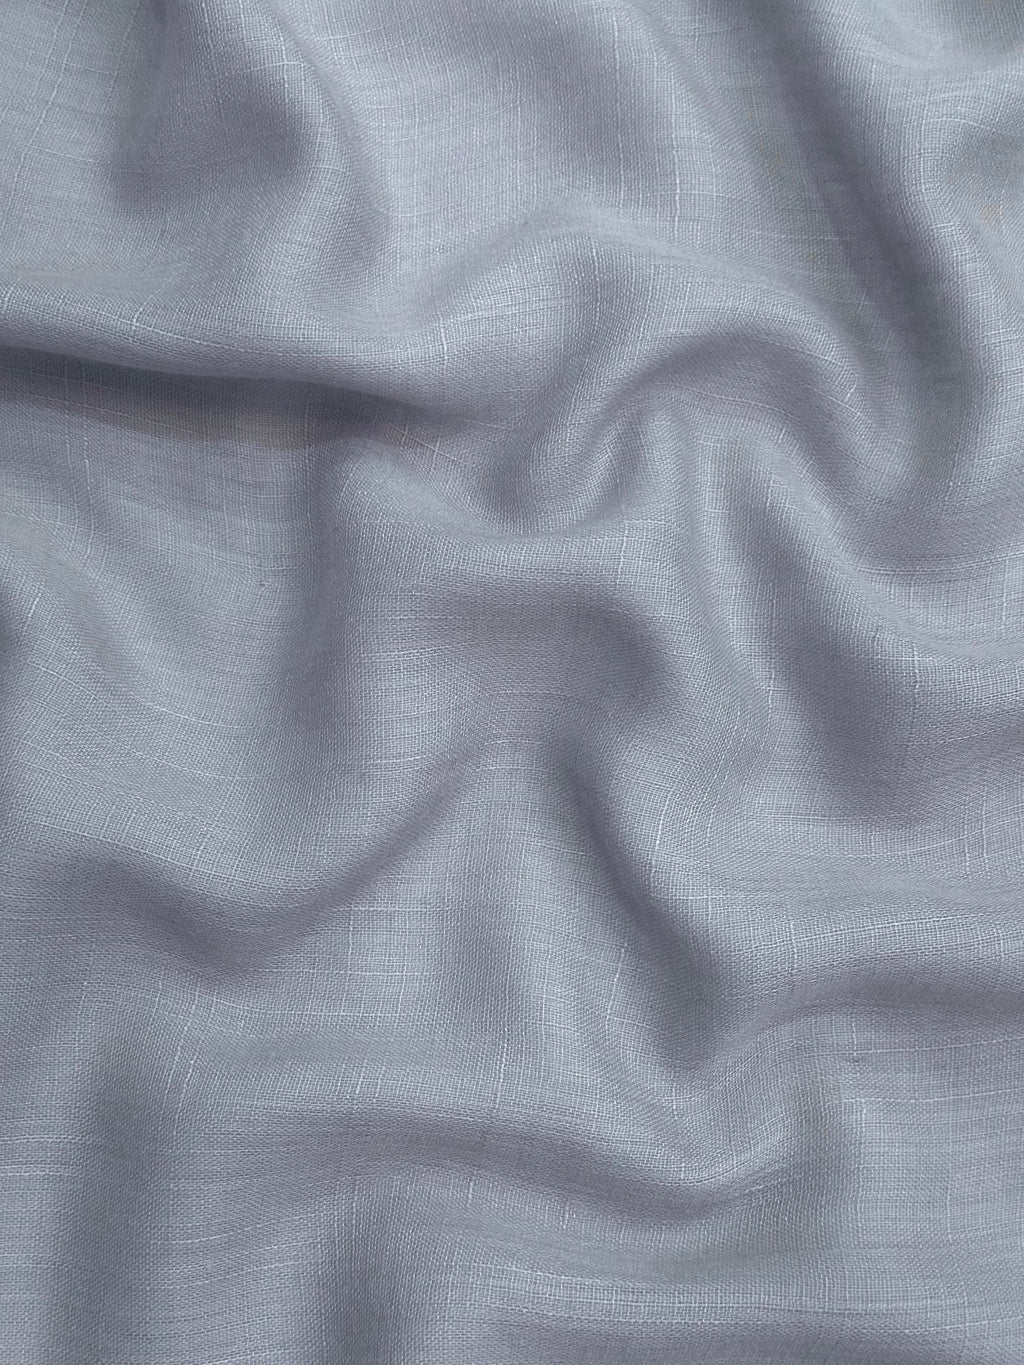 Textured Lawn Viscose - Bluish Grey